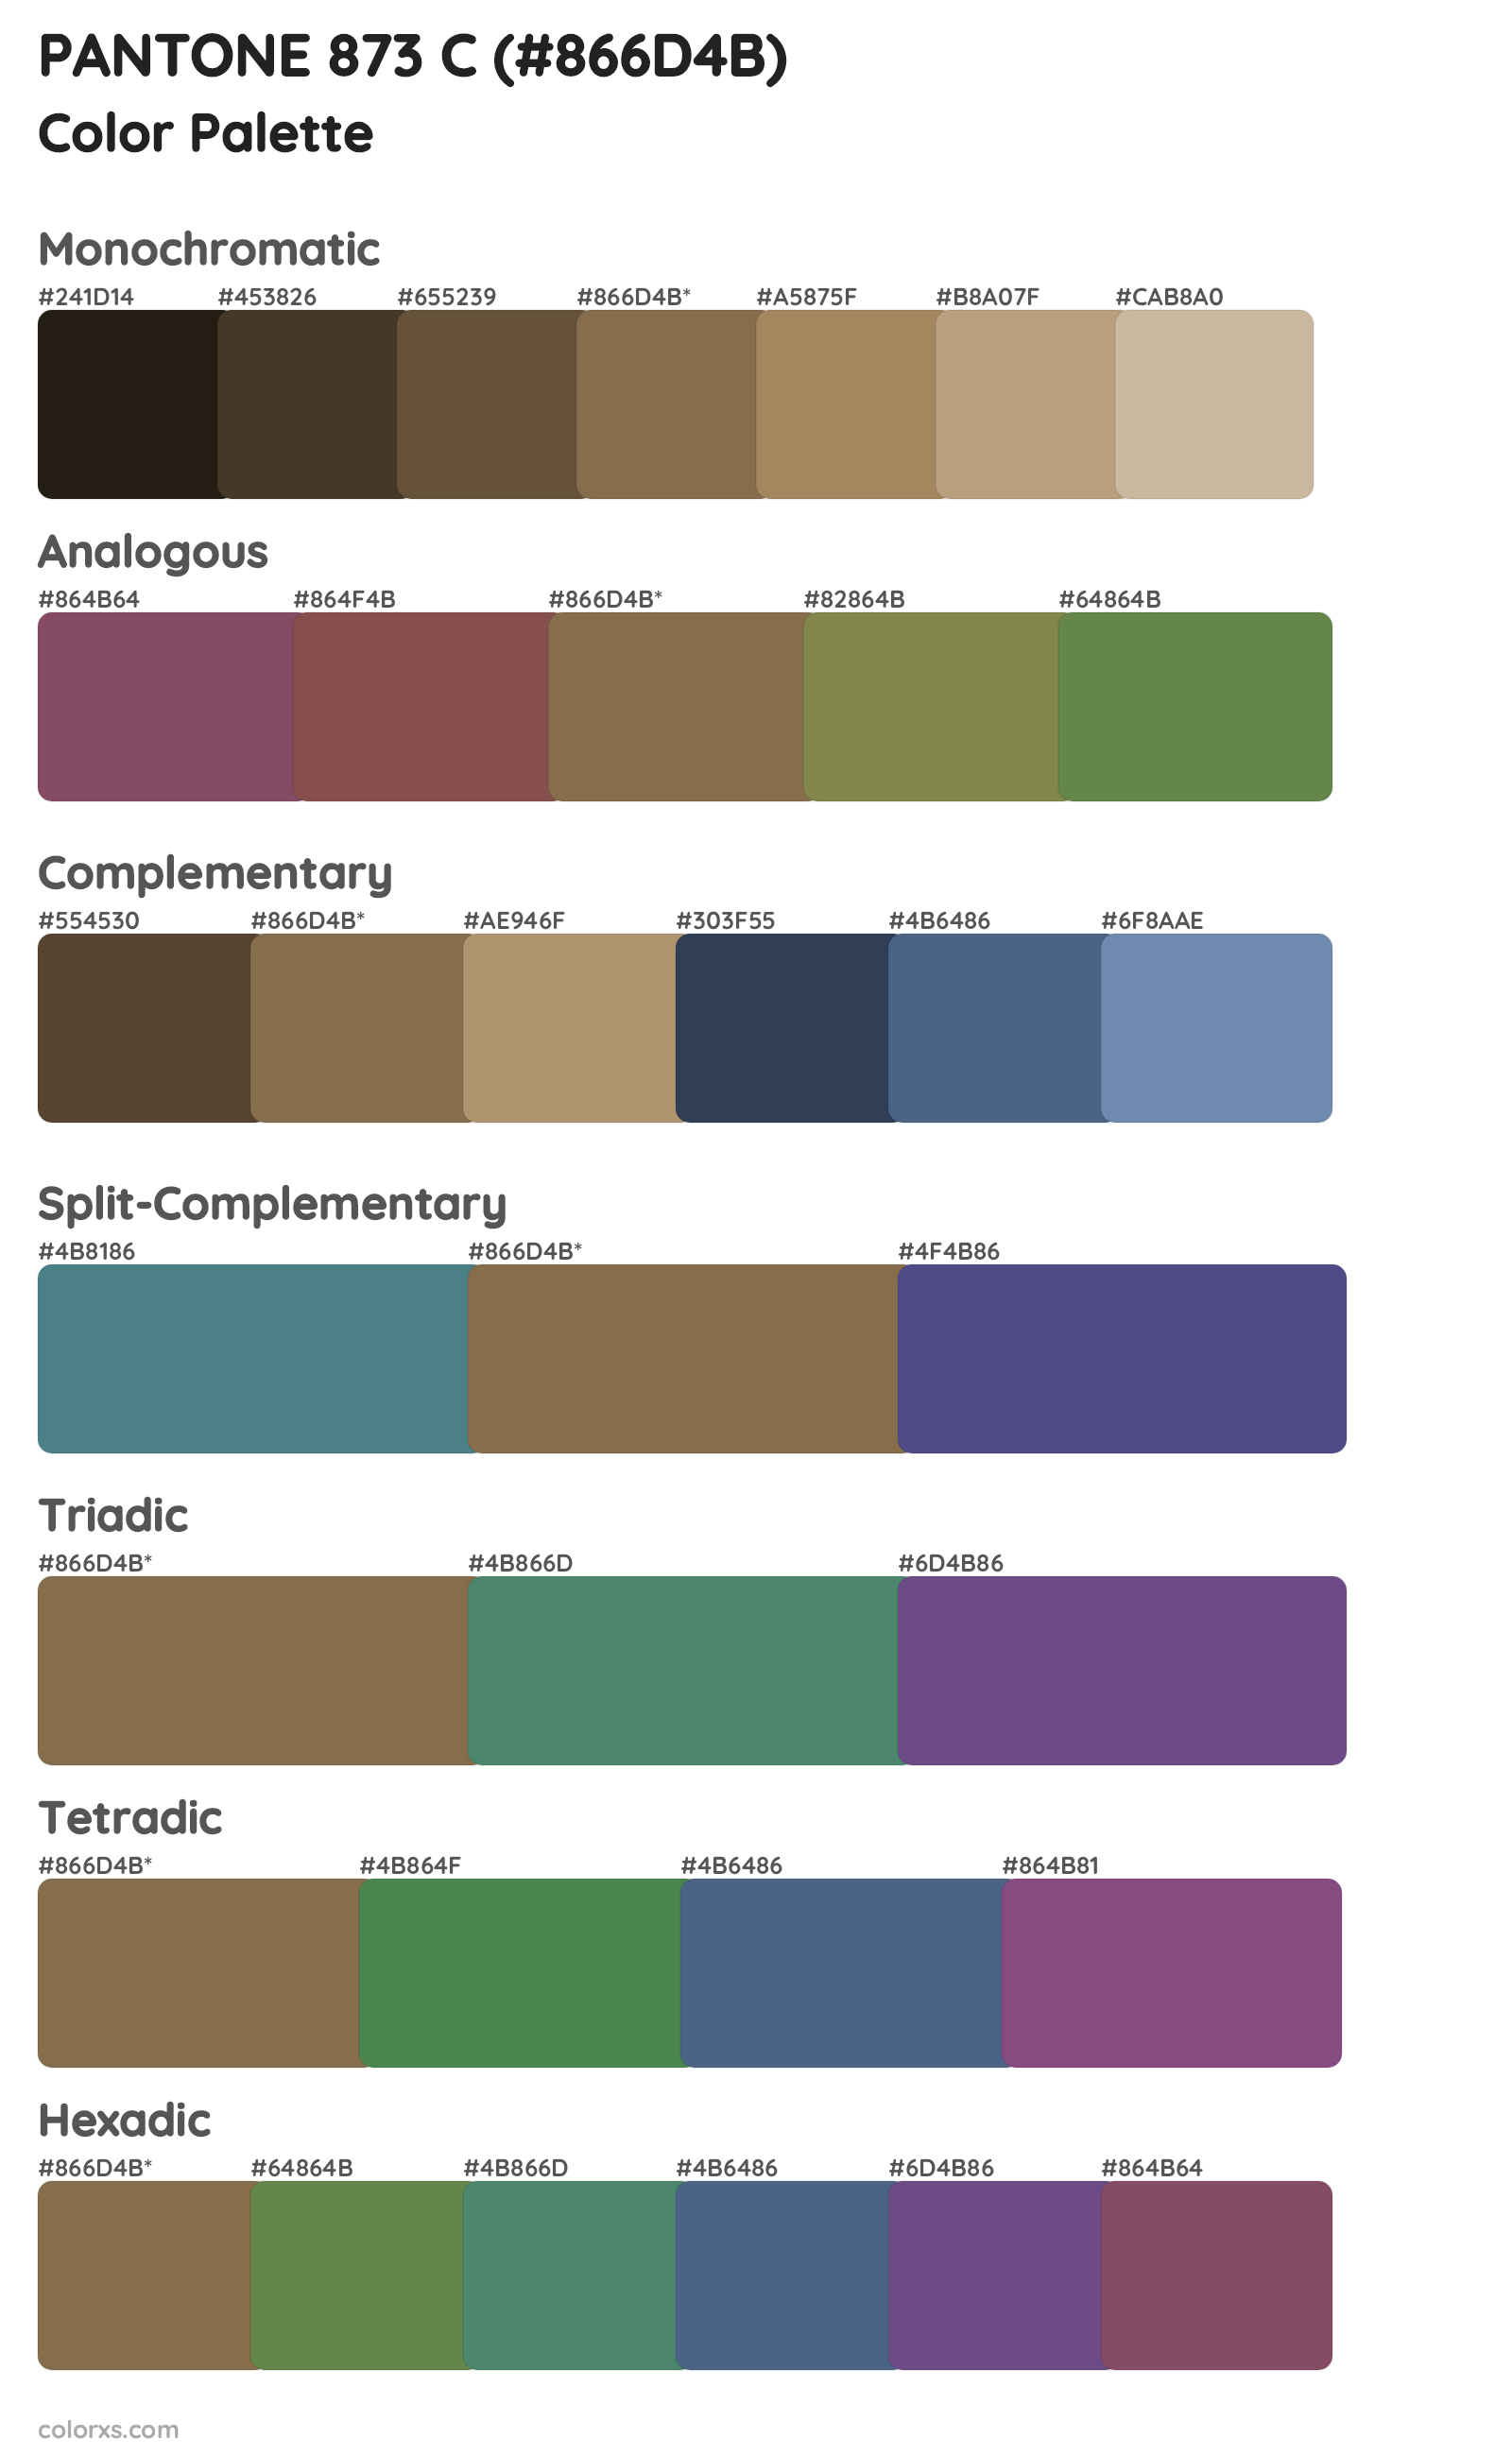 PANTONE 873 C Color Scheme Palettes